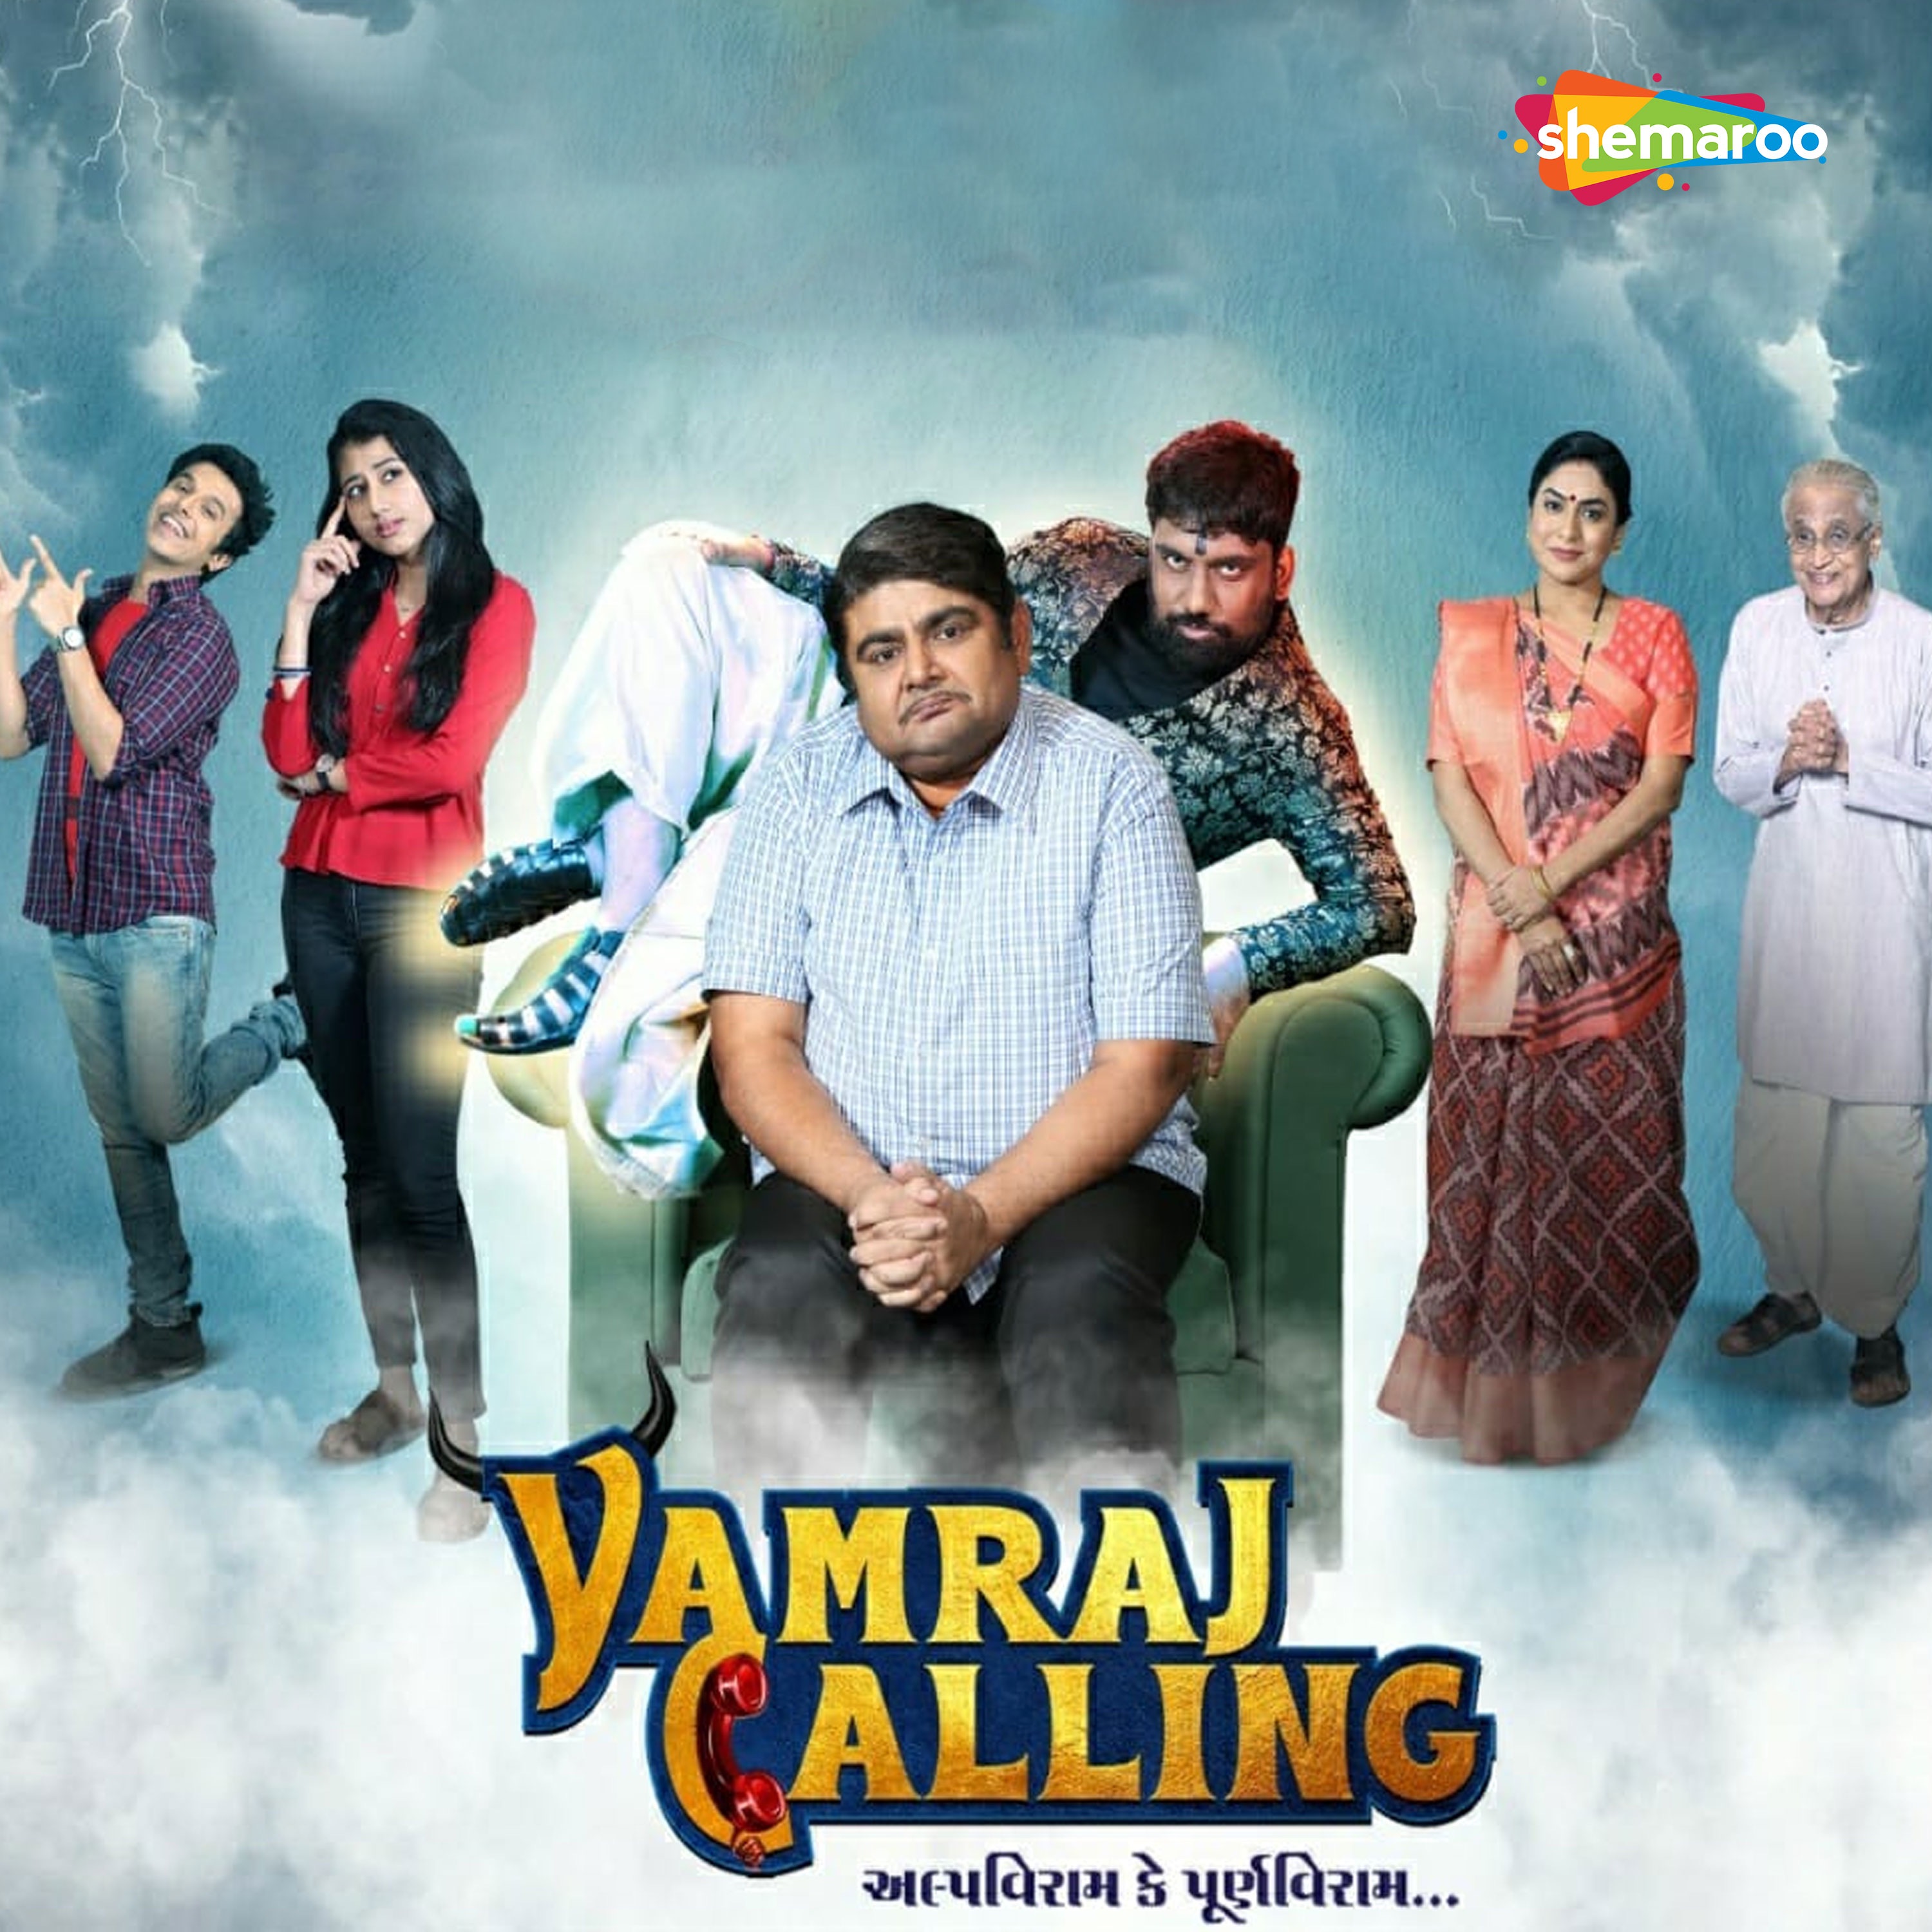 Yamraj calling